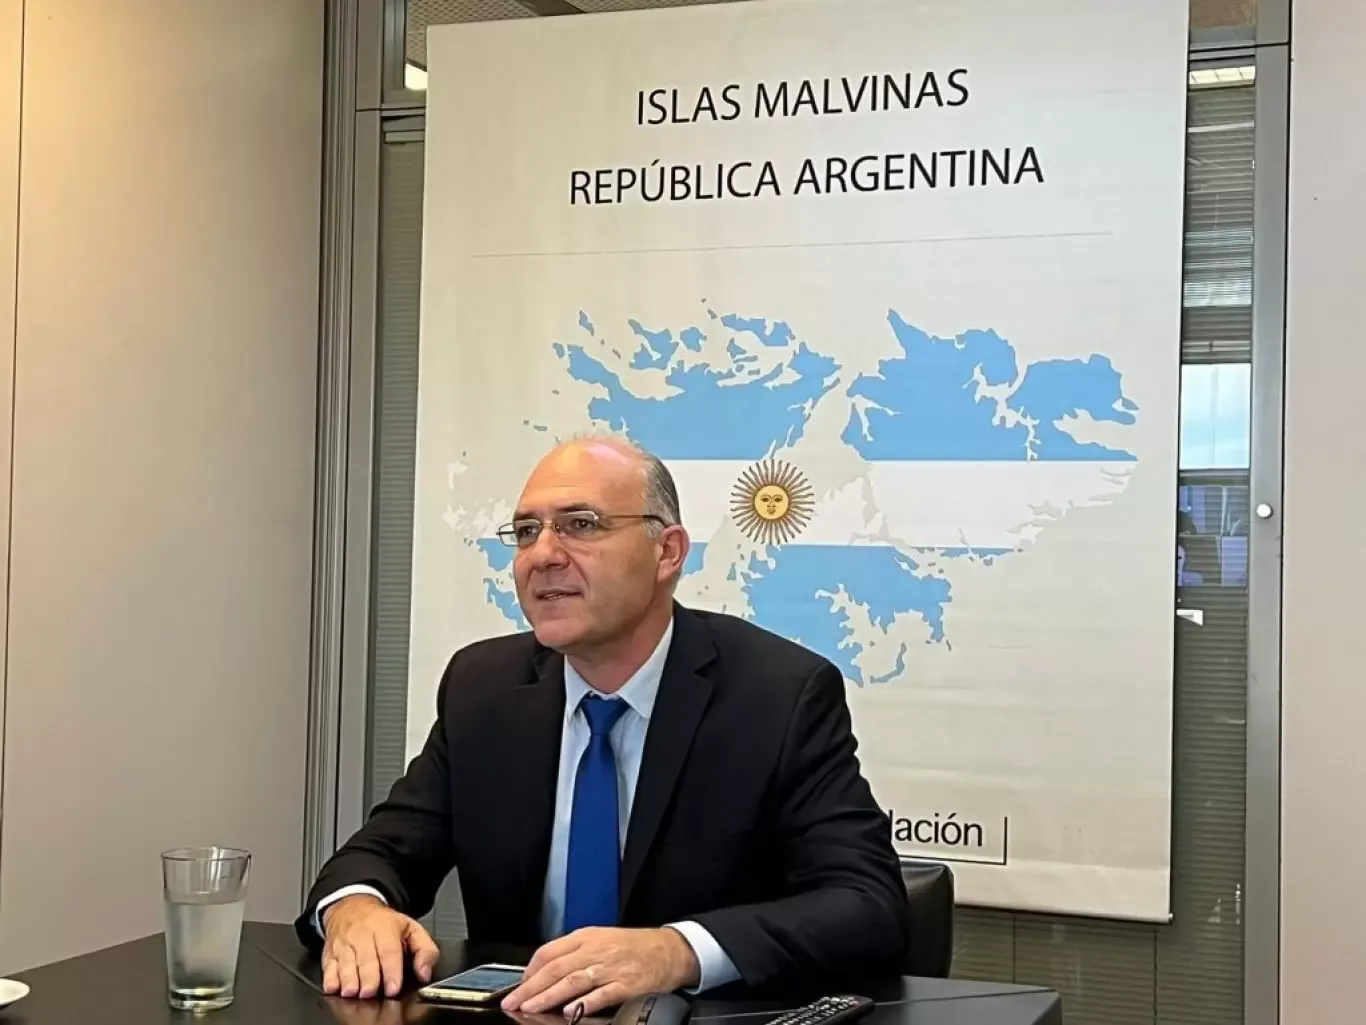 “Malvinas no es una cuestión partidaria, está por encima de las diferencias políticas”, sostuvo Guillermo Carmona